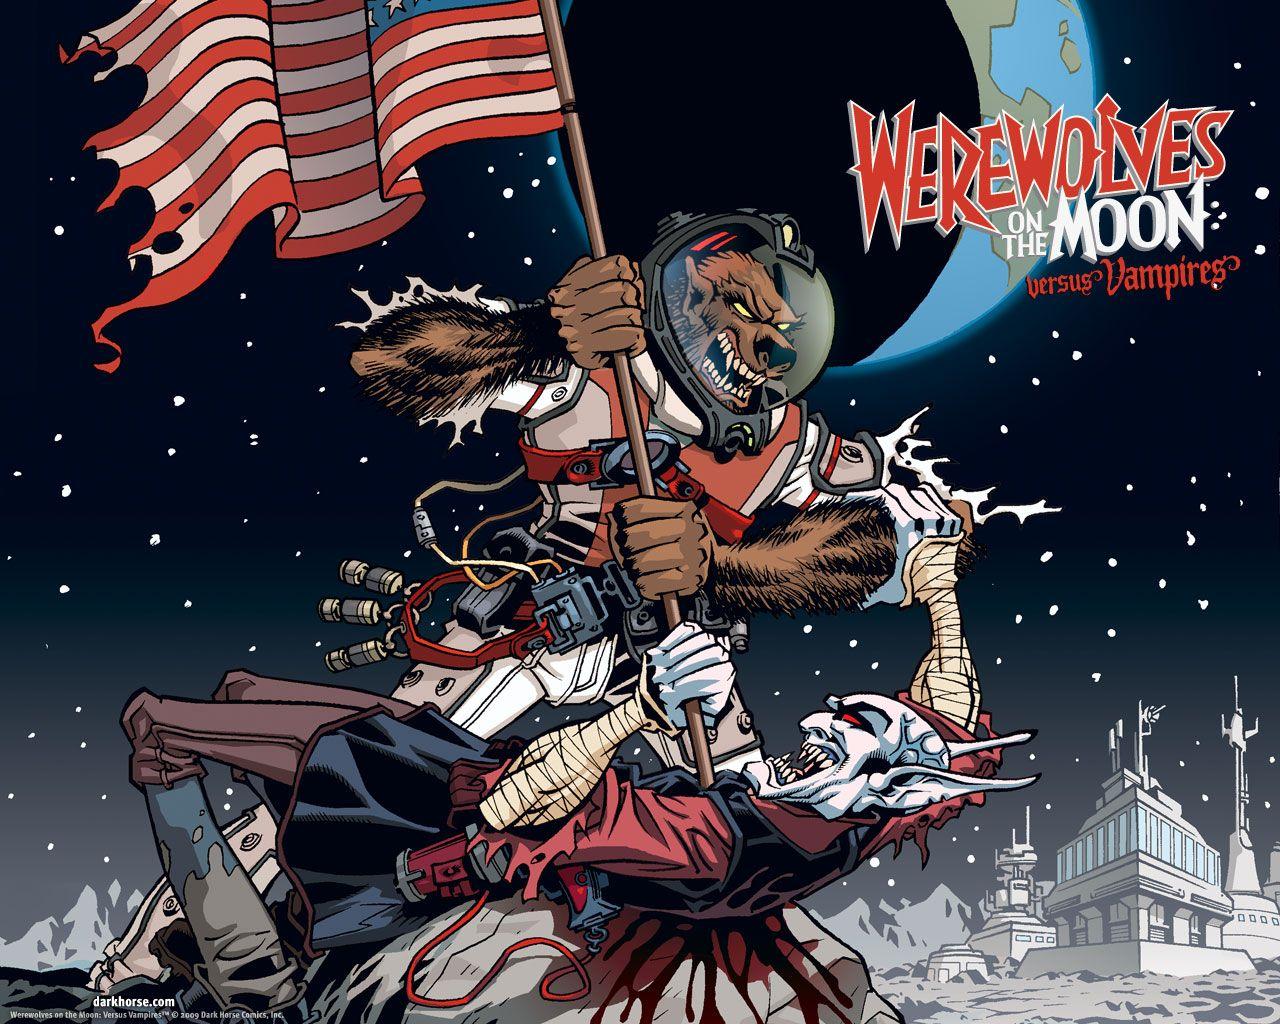 Werewolves On the Moon: Versus Vampires - Desktops - Dark Horse Comics